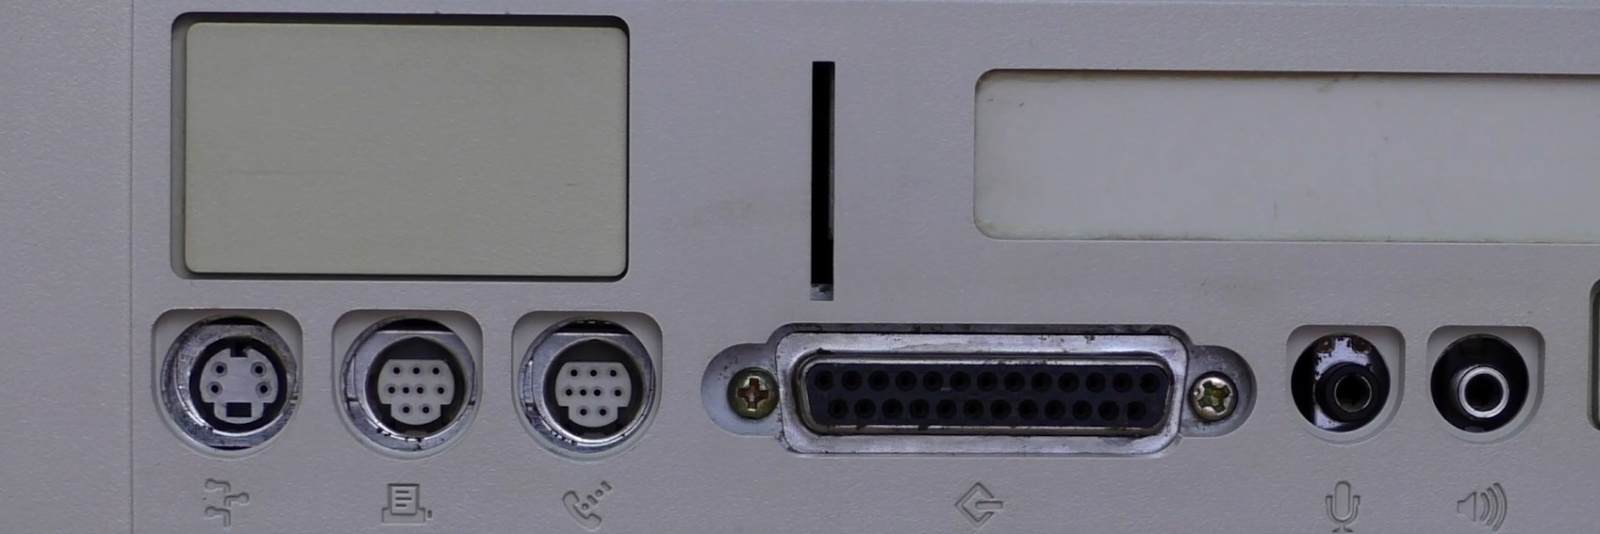 Power Macintosh 6200-75 — компьютер 1995 года (текст и видео — на выбор) - 7